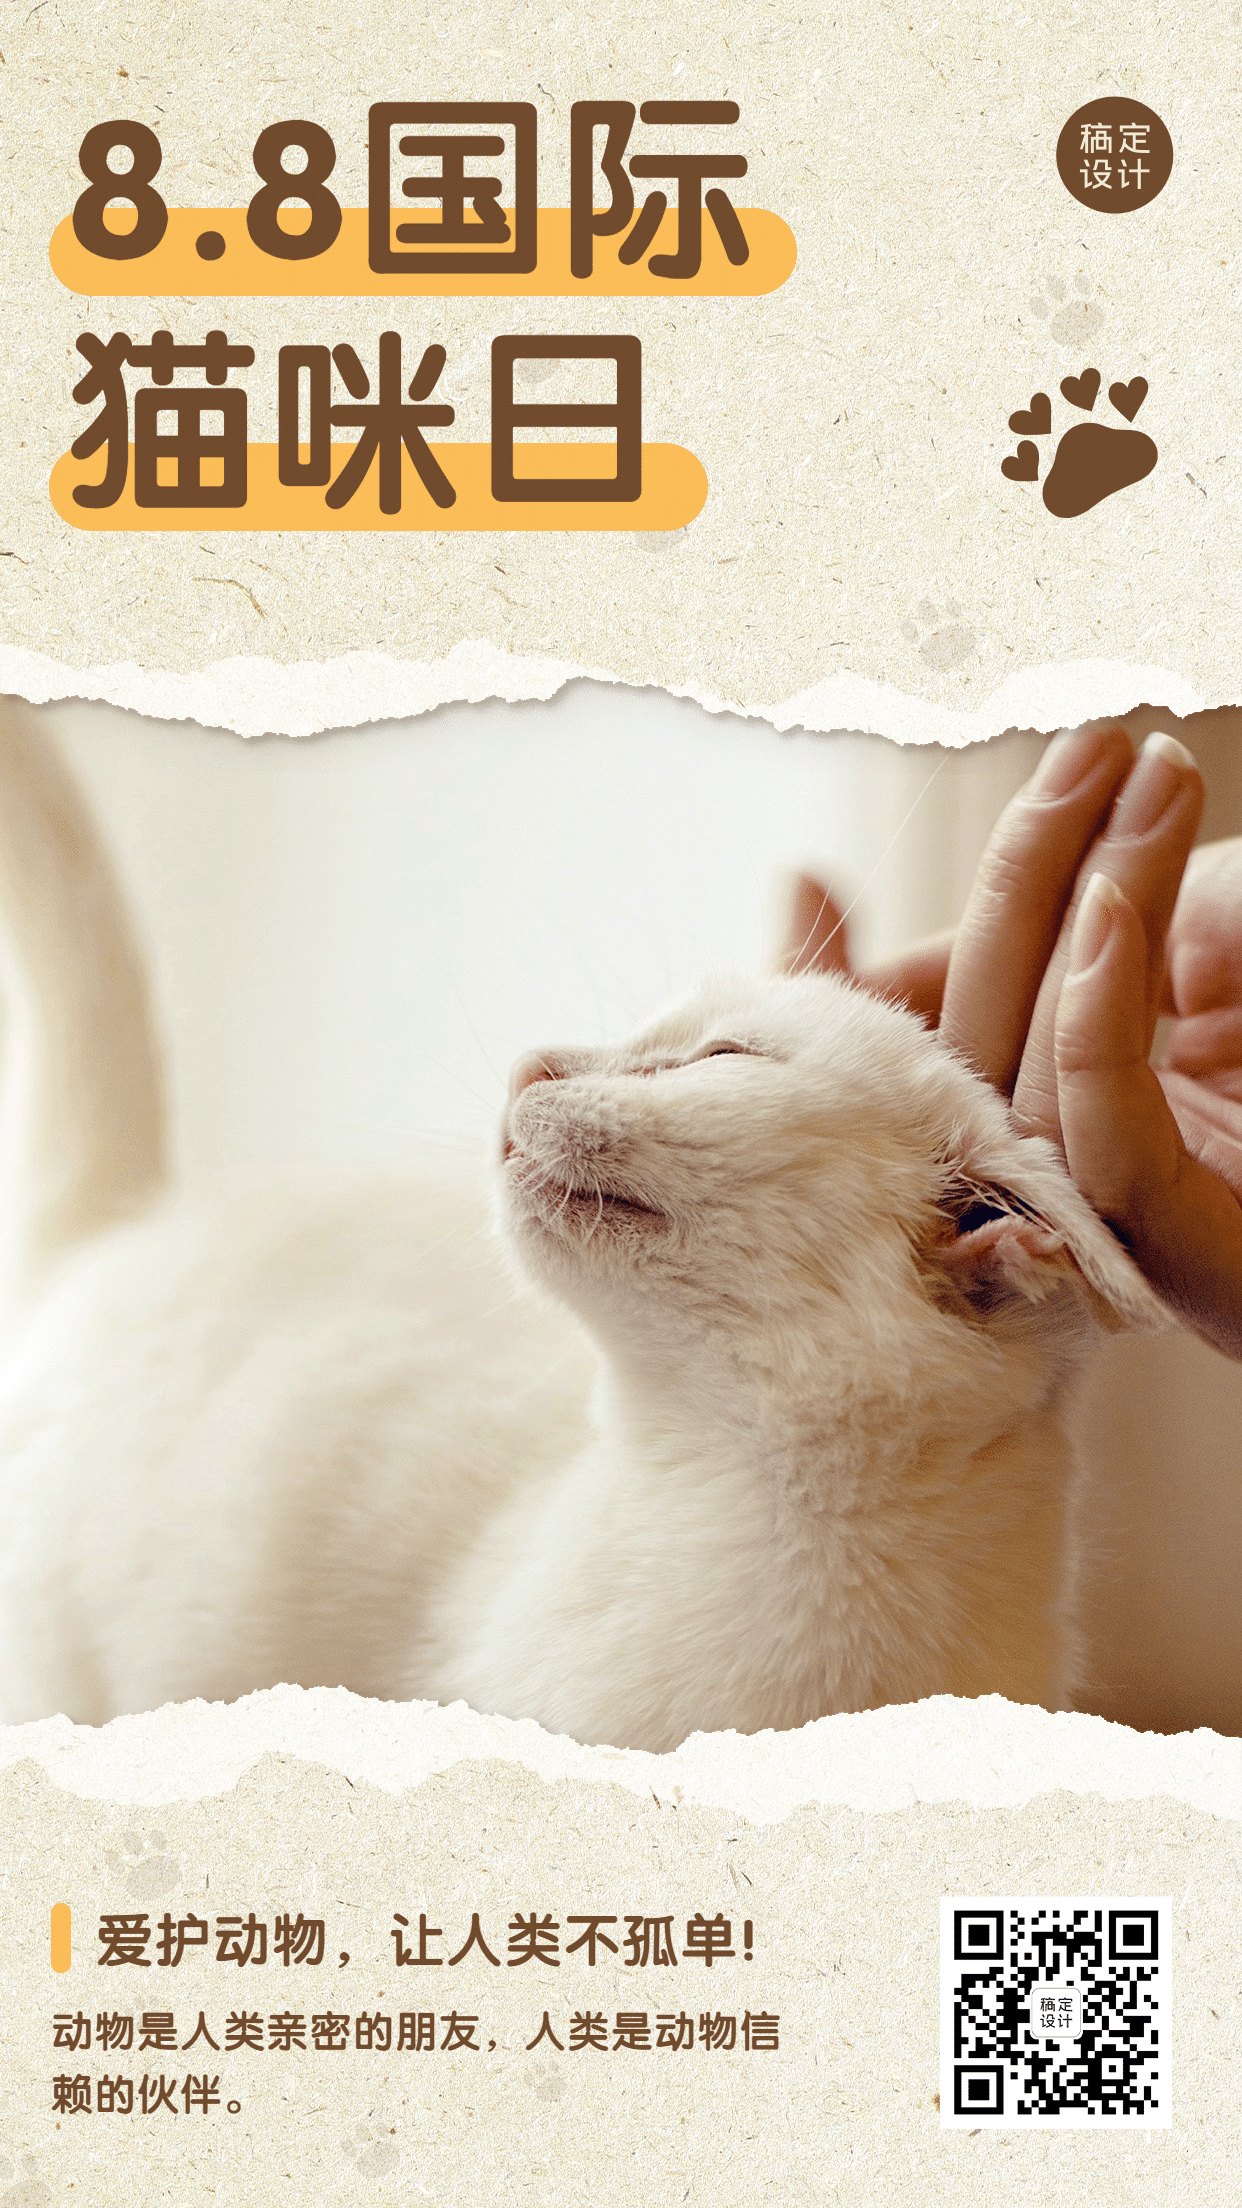 国际猫咪日关爱动物公益宣传实景手机海报预览效果